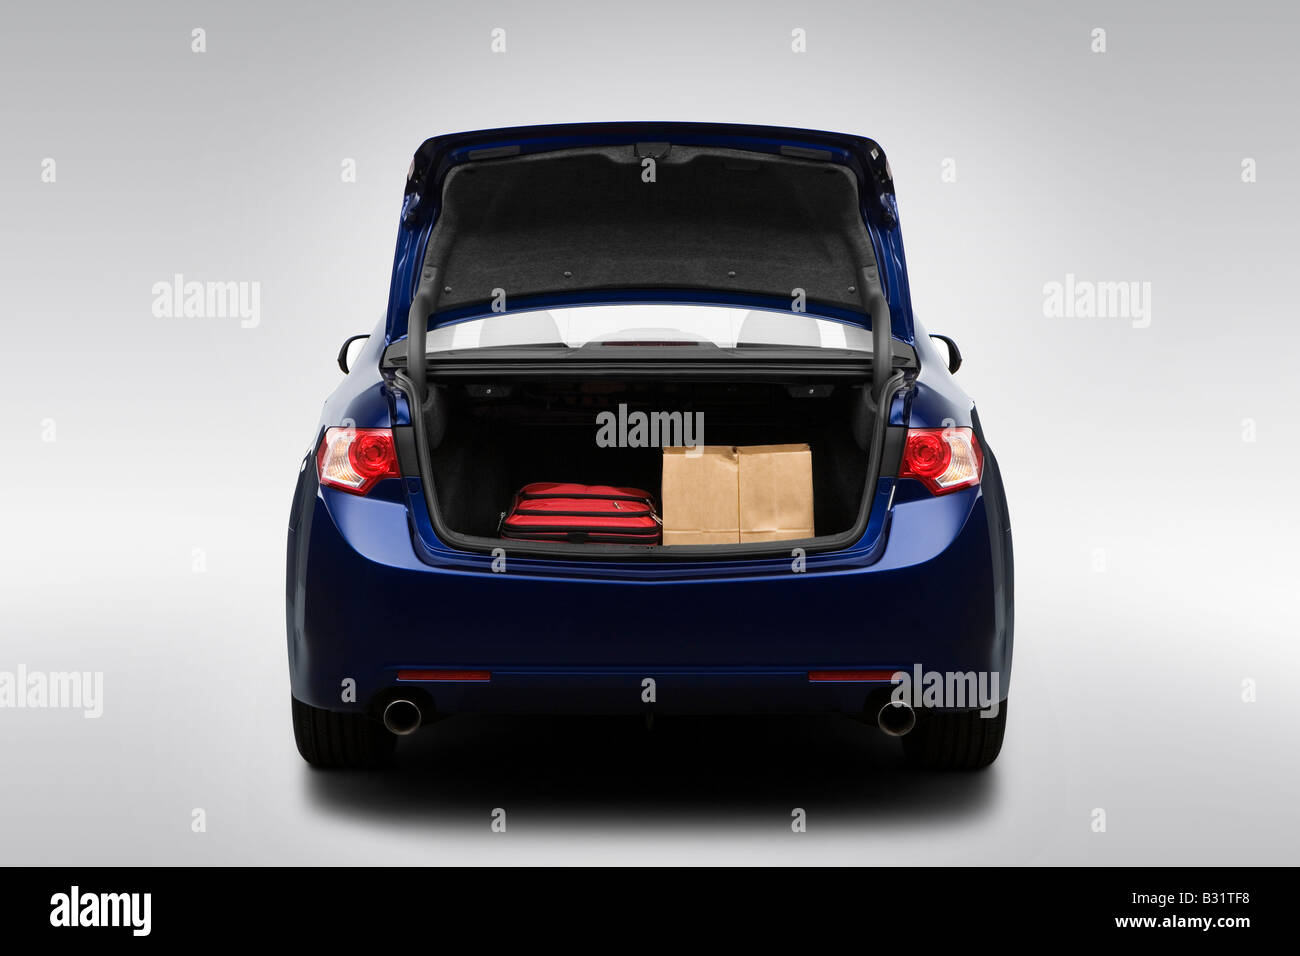 2009 Acura TSX in blau - Stamm Requisiten Stockfoto